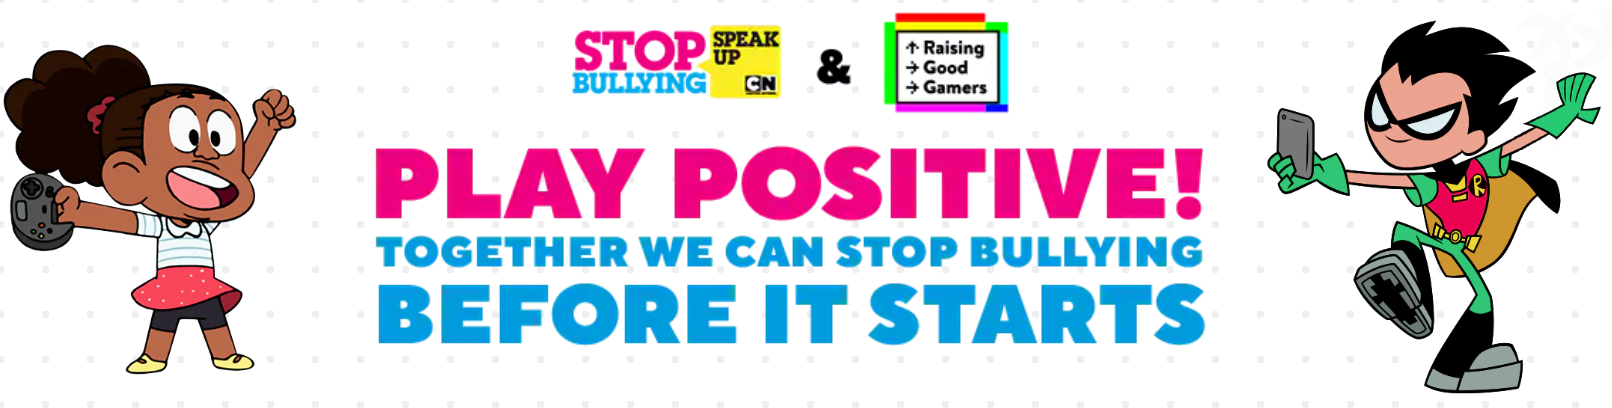 stop bullying speak up